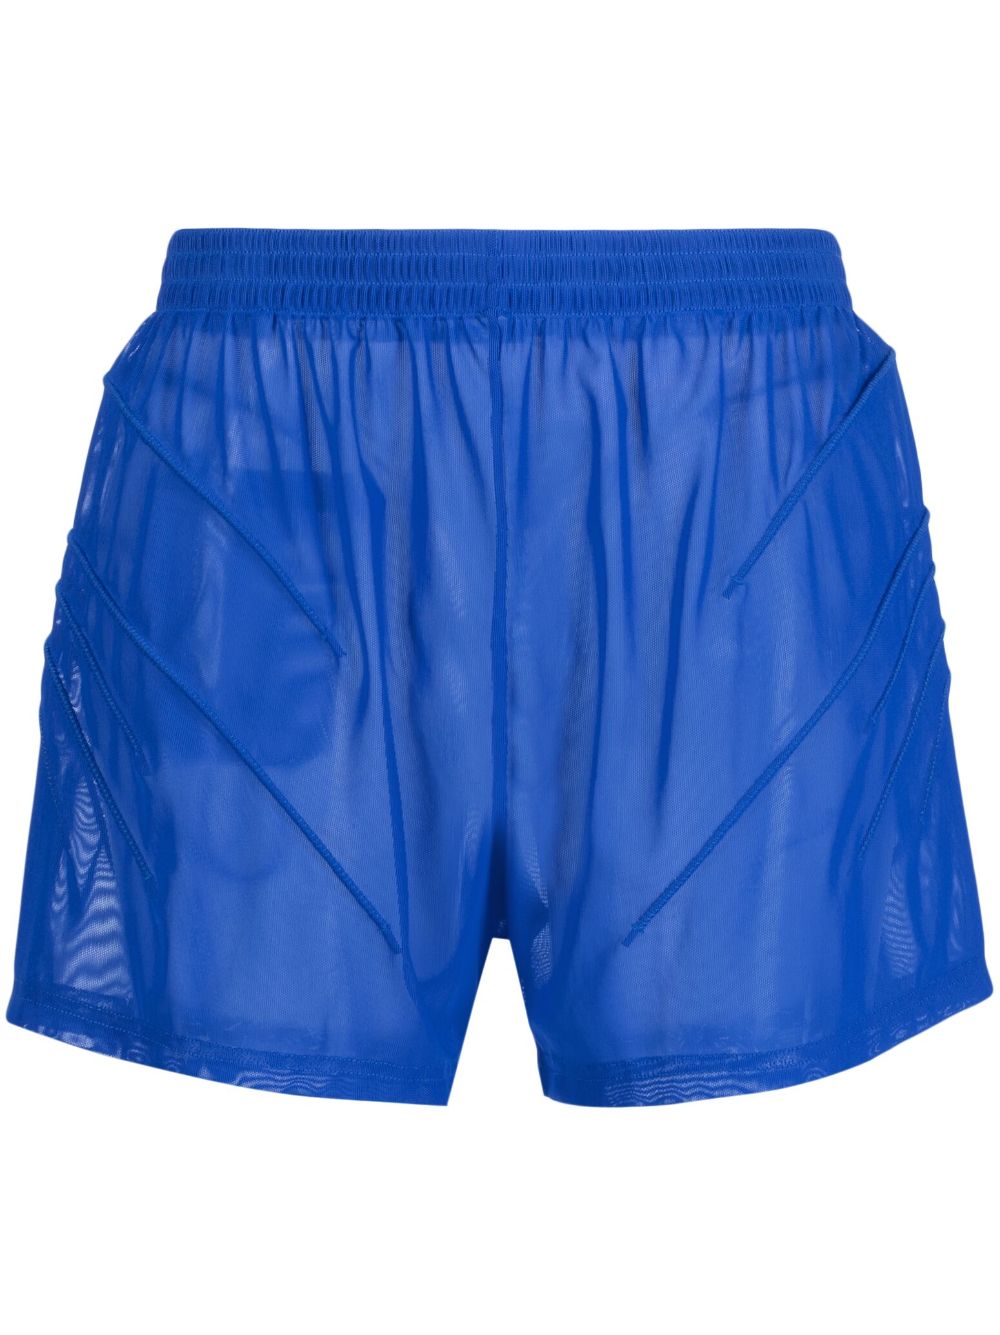 Olly Shinder Semi-transparente Joggingshorts - Blau von Olly Shinder